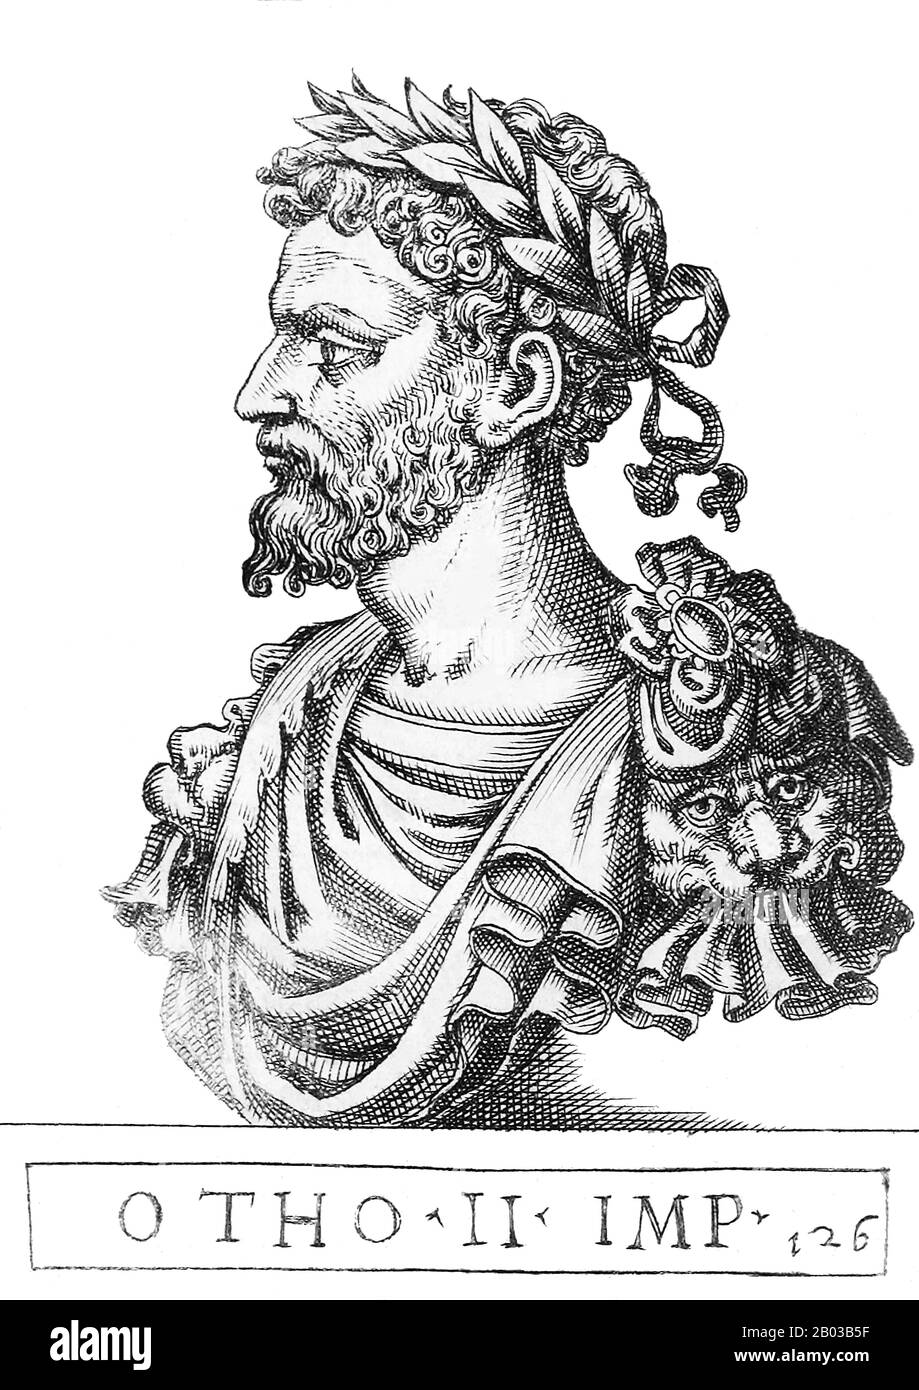 Otto II (955-983), auch bekannt als Otto der Rote, war der jüngste und einzige überlebende Sohn von Kaiser Otto dem Großen. Er wurde 961 zum Mitherrscher Deutschlands und 967 später zum Mitkaiser ernannt. Sein Vater hatte sich darauf eingestellt, die byzantinische Prinzessin Theophanu zu heiraten, um bessere Beziehungen zum Kaisertum in byzantinischer Zeit zu pflegen. Nachdem sein Vater 973 gestorben war, wurde Otto in friedlicher Folge Heiliger römischer Kaiser. Stockfoto